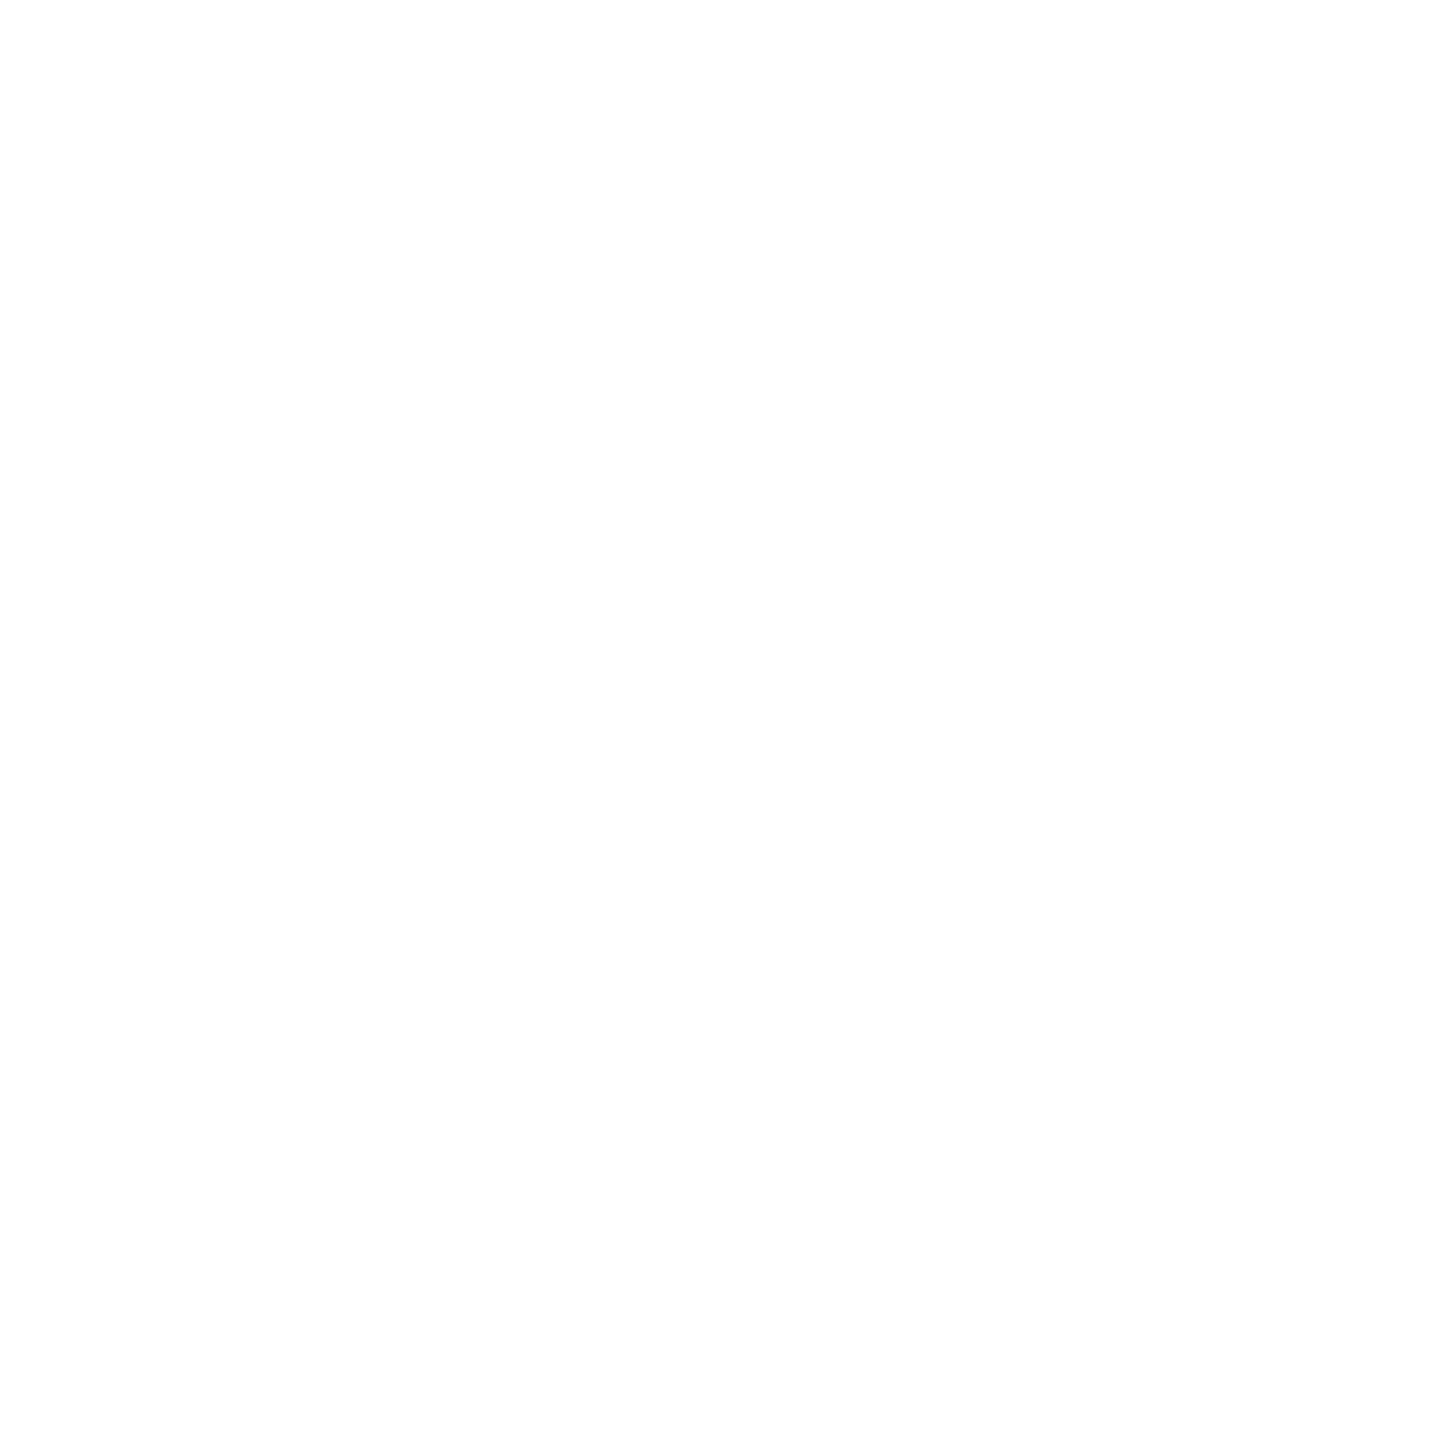 Bayer Logo